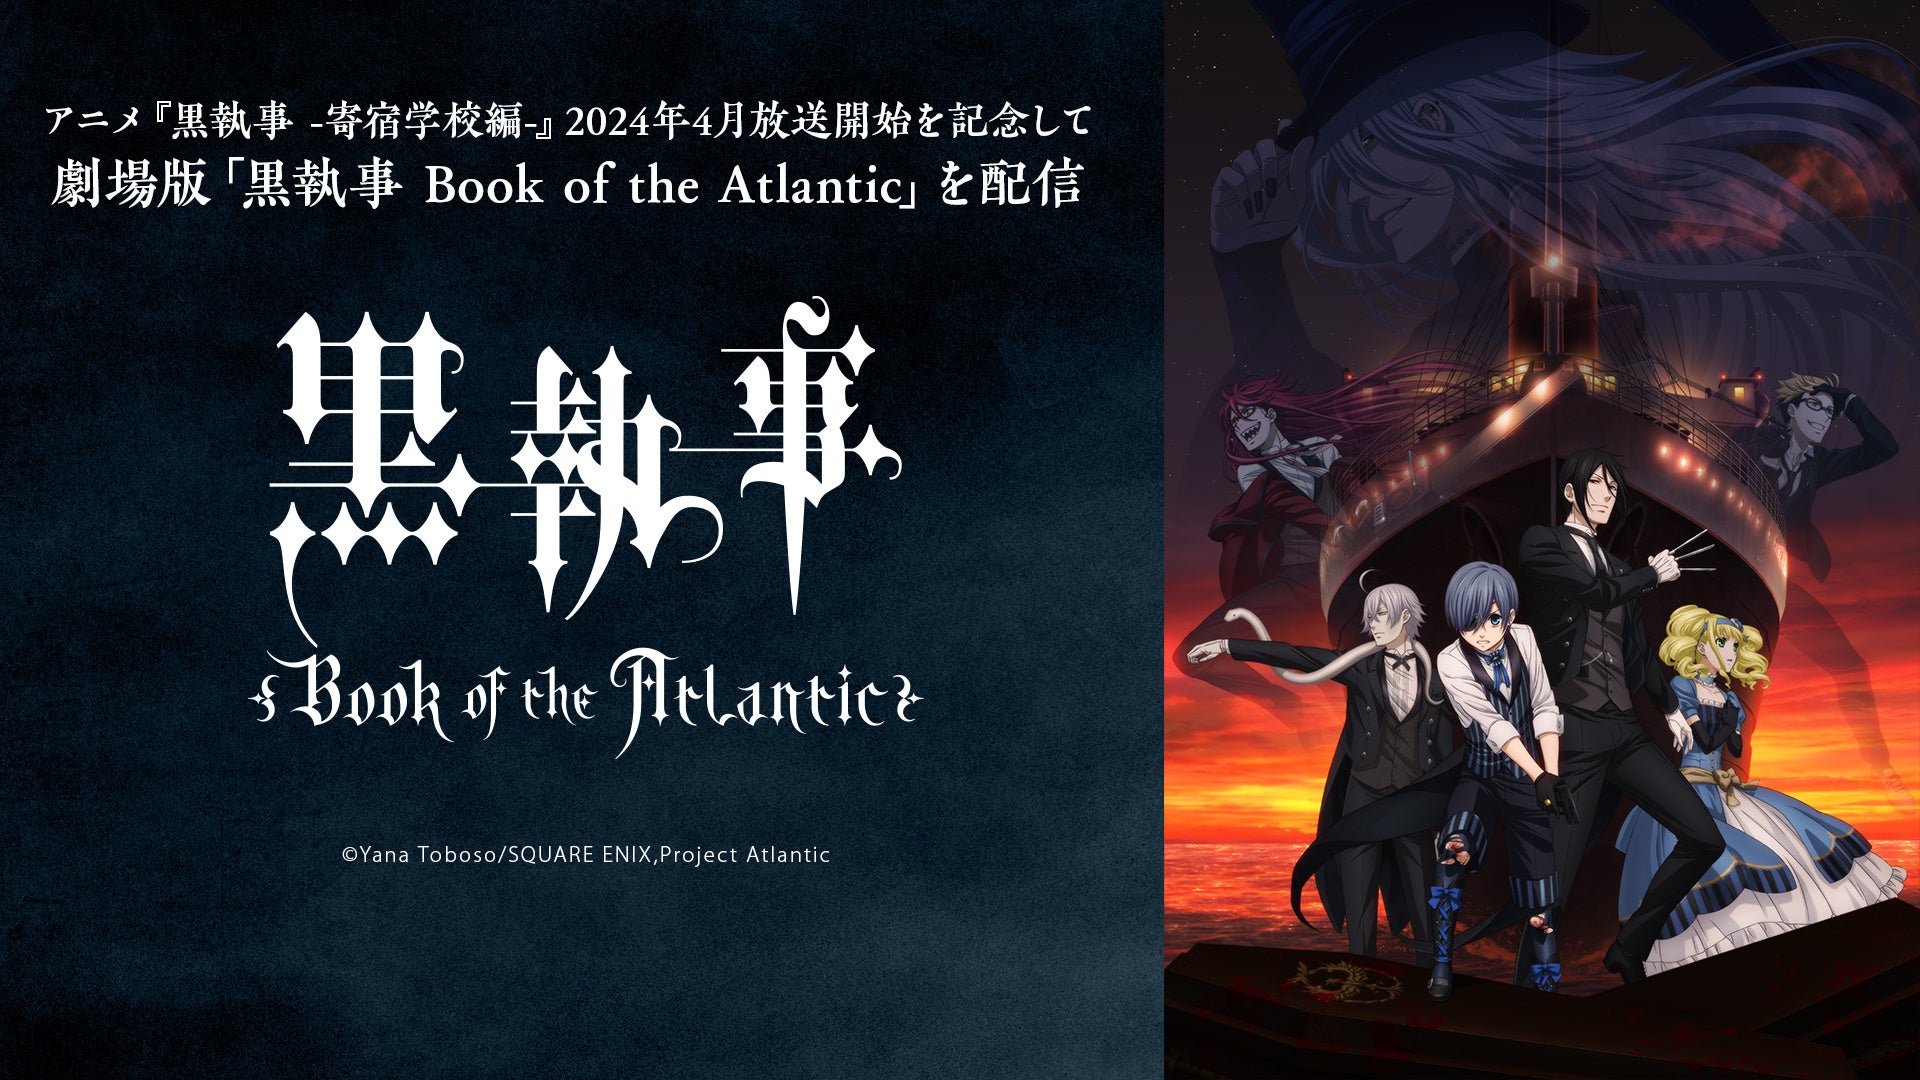 劇場版「黒執事 Book of the Atlantic」 ニコ生で無料上映会を実施